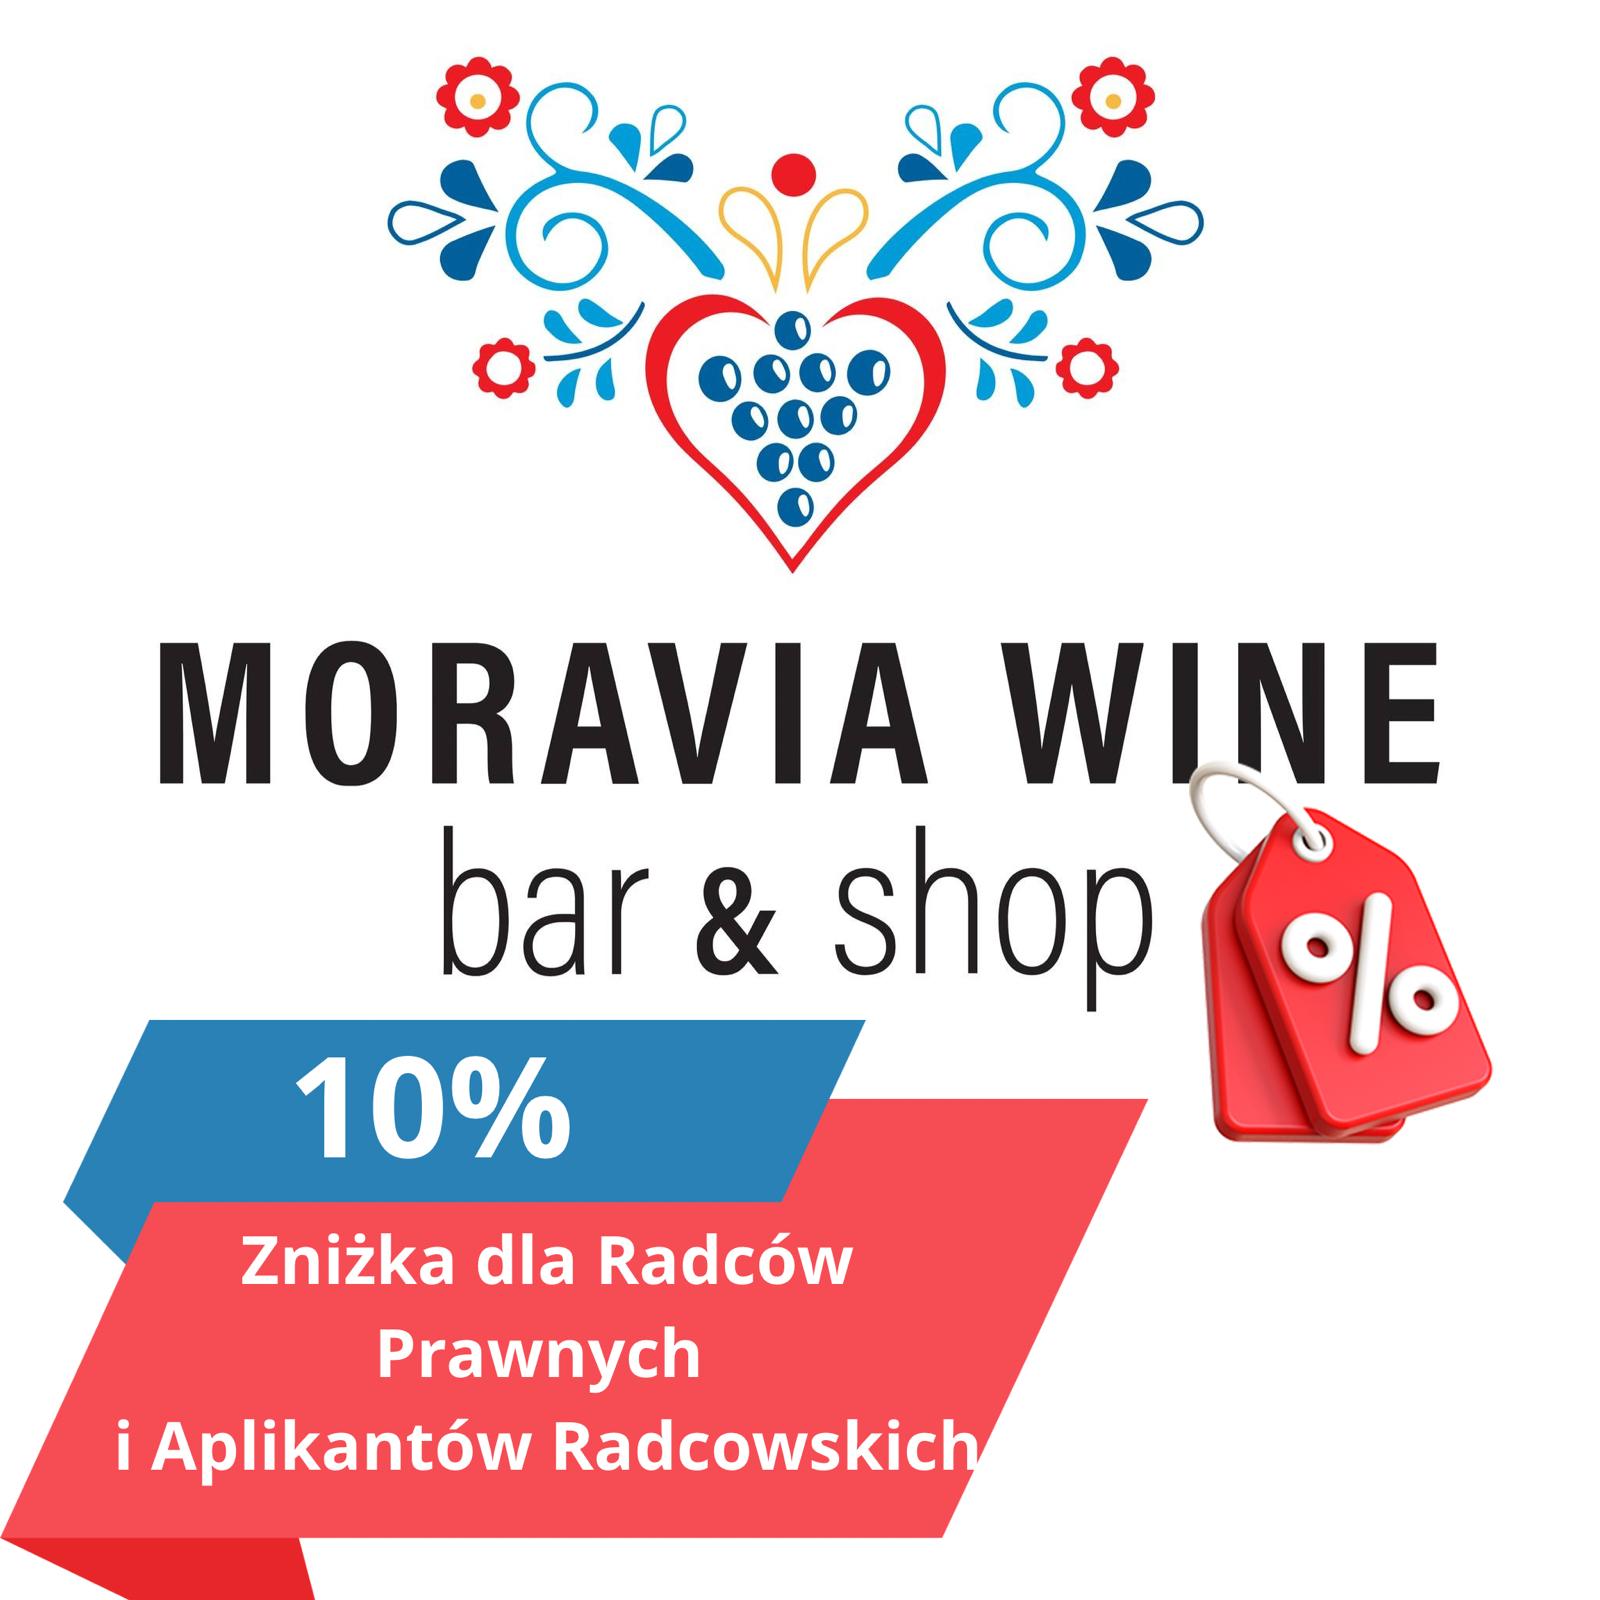 10% rabatu dla radców prawnych i aplikantów radcowskich w Moravia Wine Bar & Shop